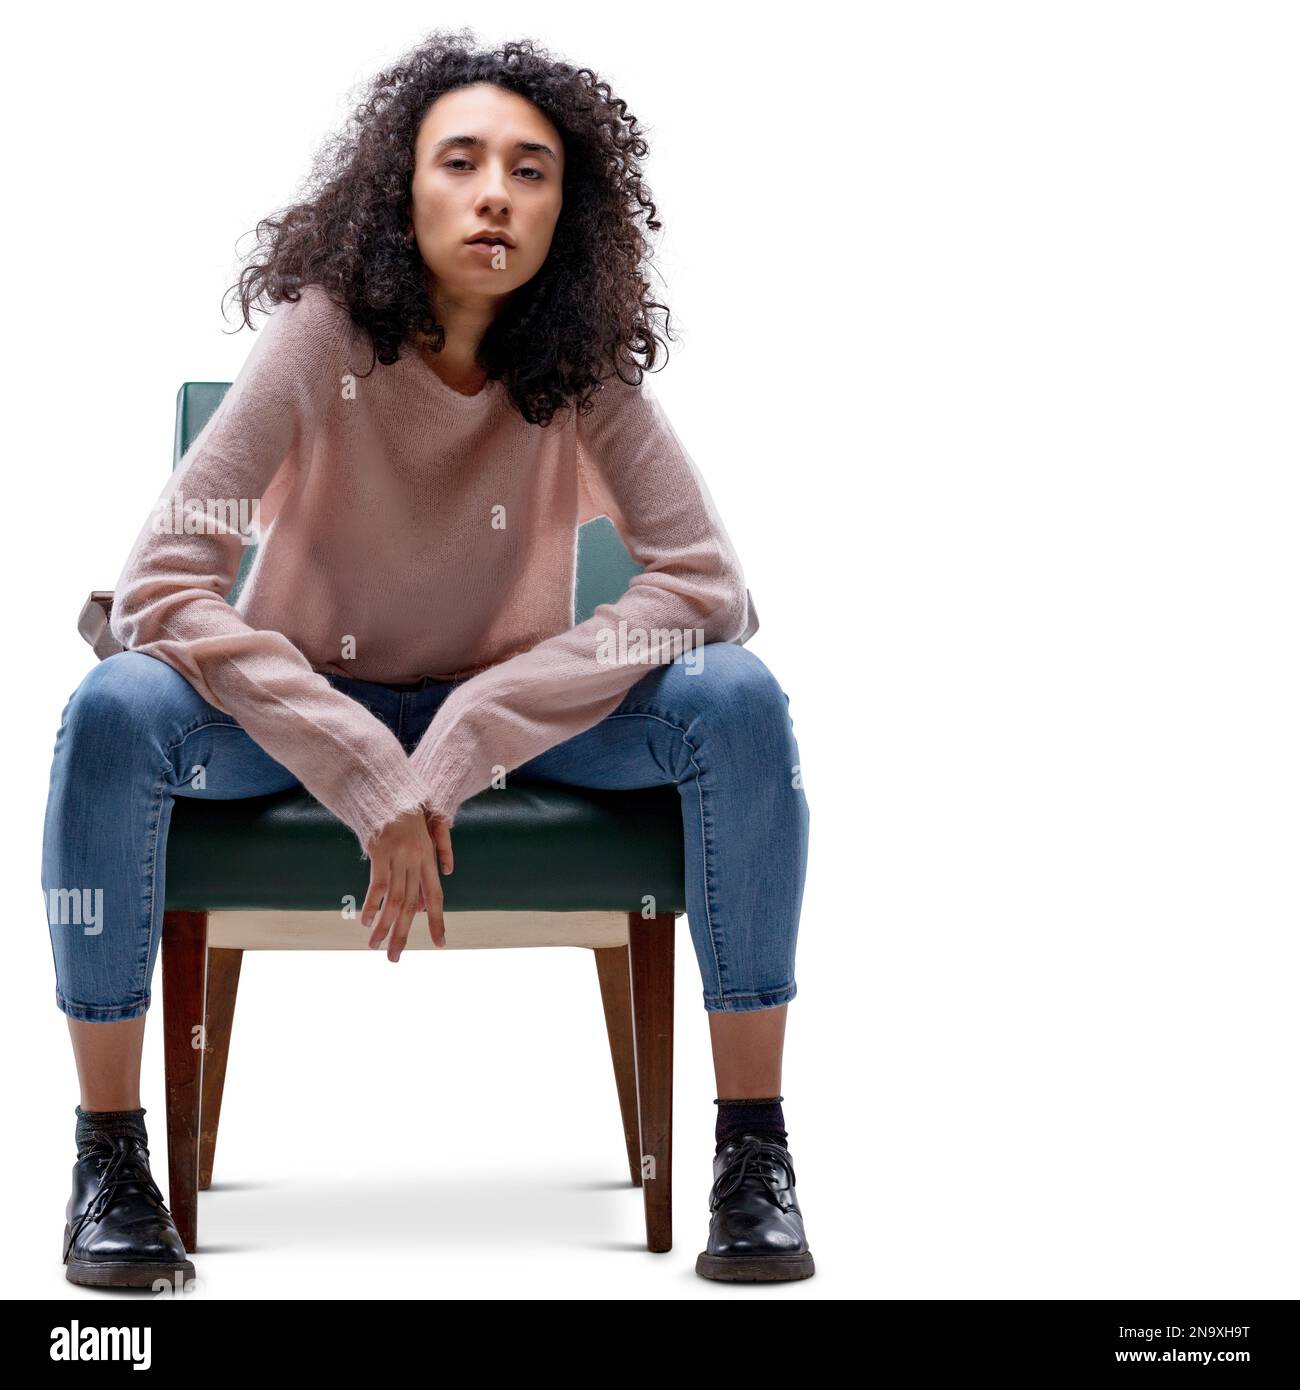 Jeune femme aux cheveux mauris assise sur une chaise avec des jambes  écartées dans une position de tomboy et une expression de confiance et de  défi sérieux. Isolé sur Photo Stock -